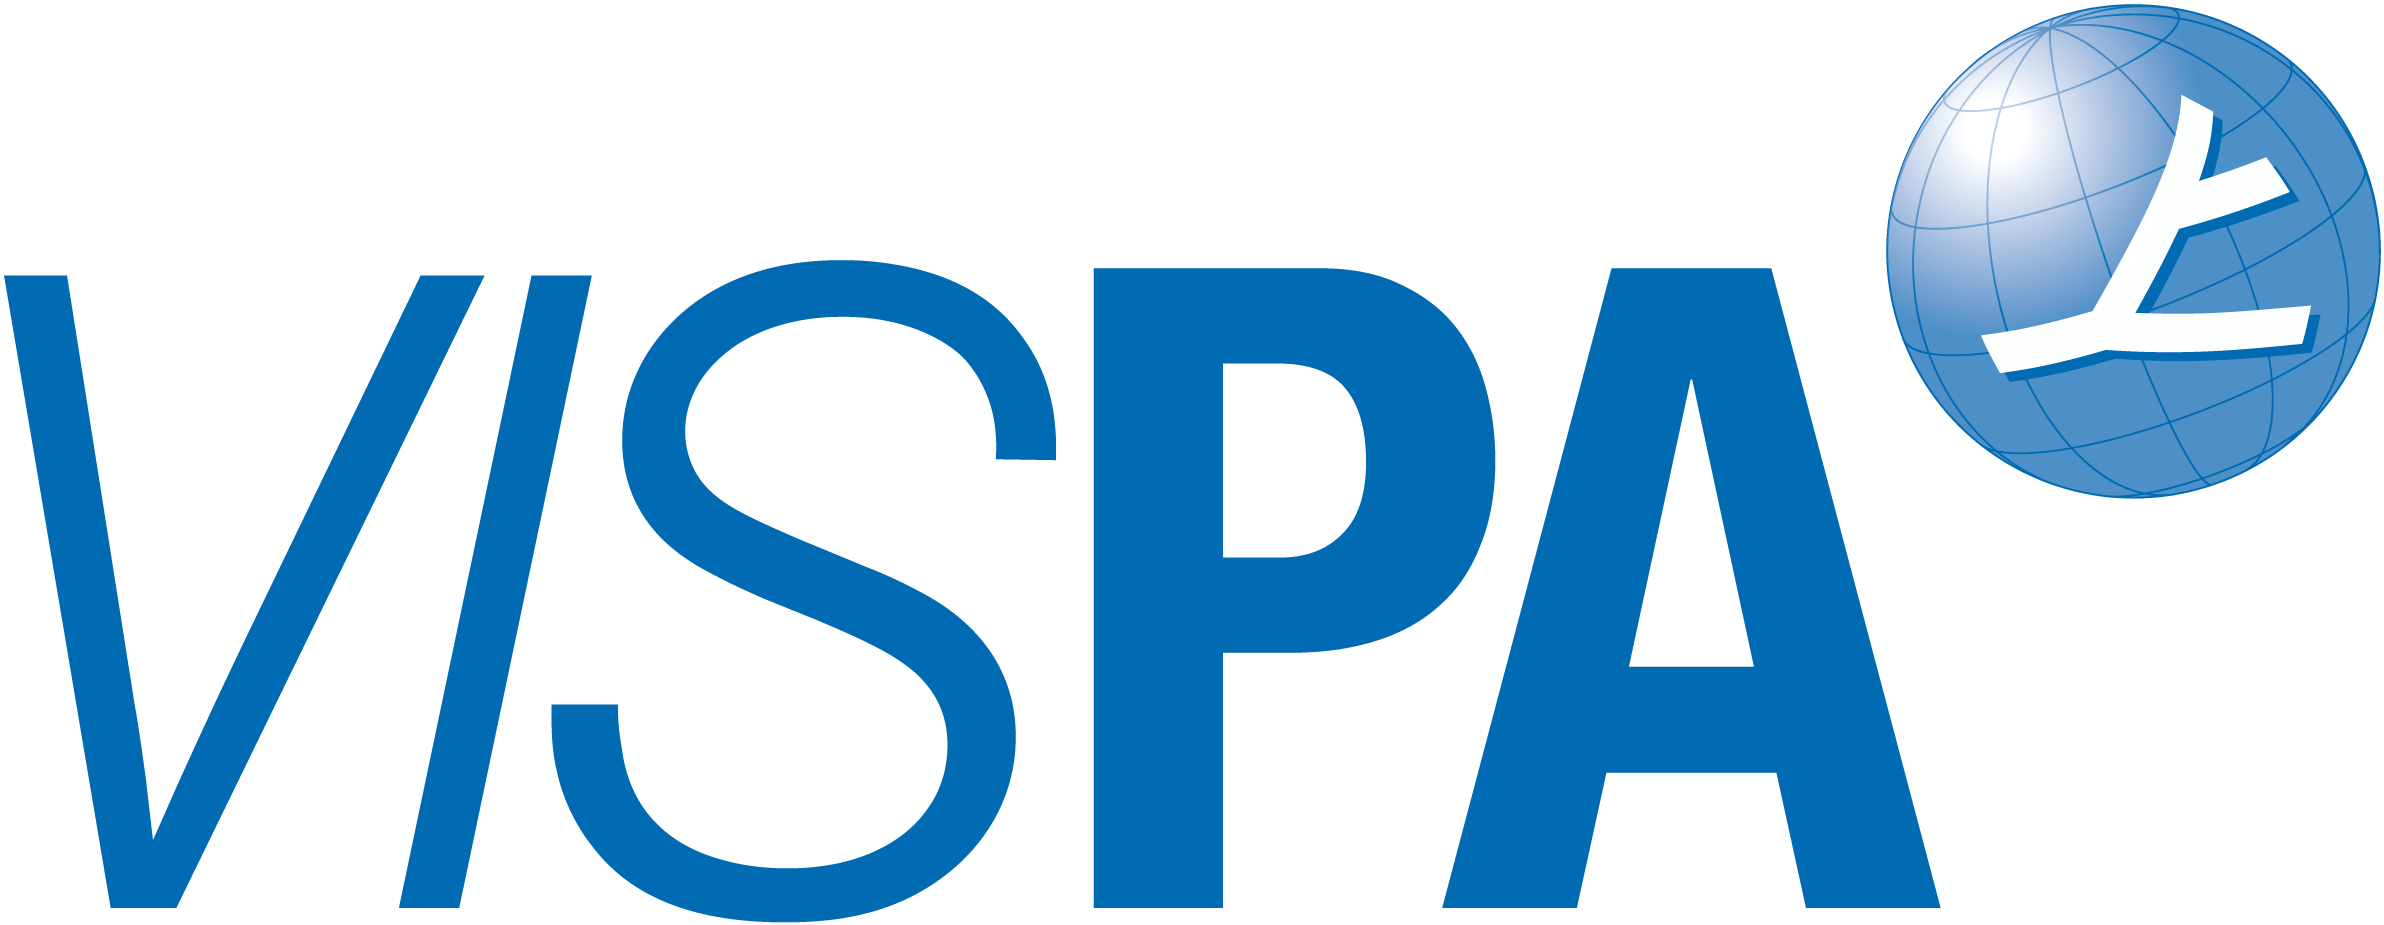 VISPA logo